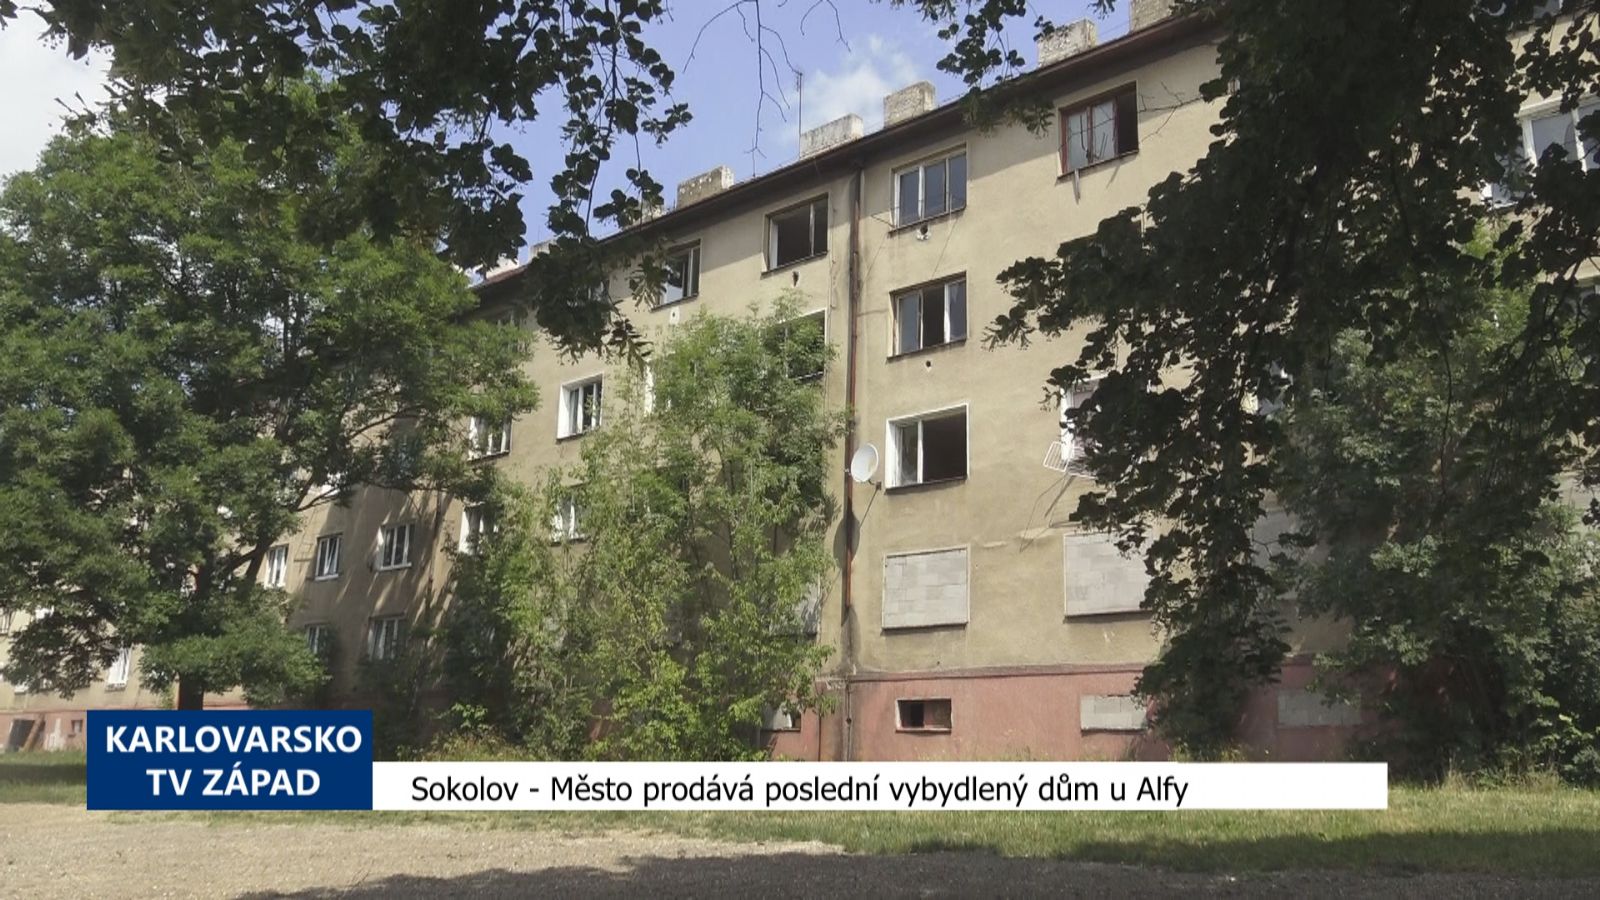 Sokolov: Město prodává poslední vybydlený dům u Alfy (TV Západ)